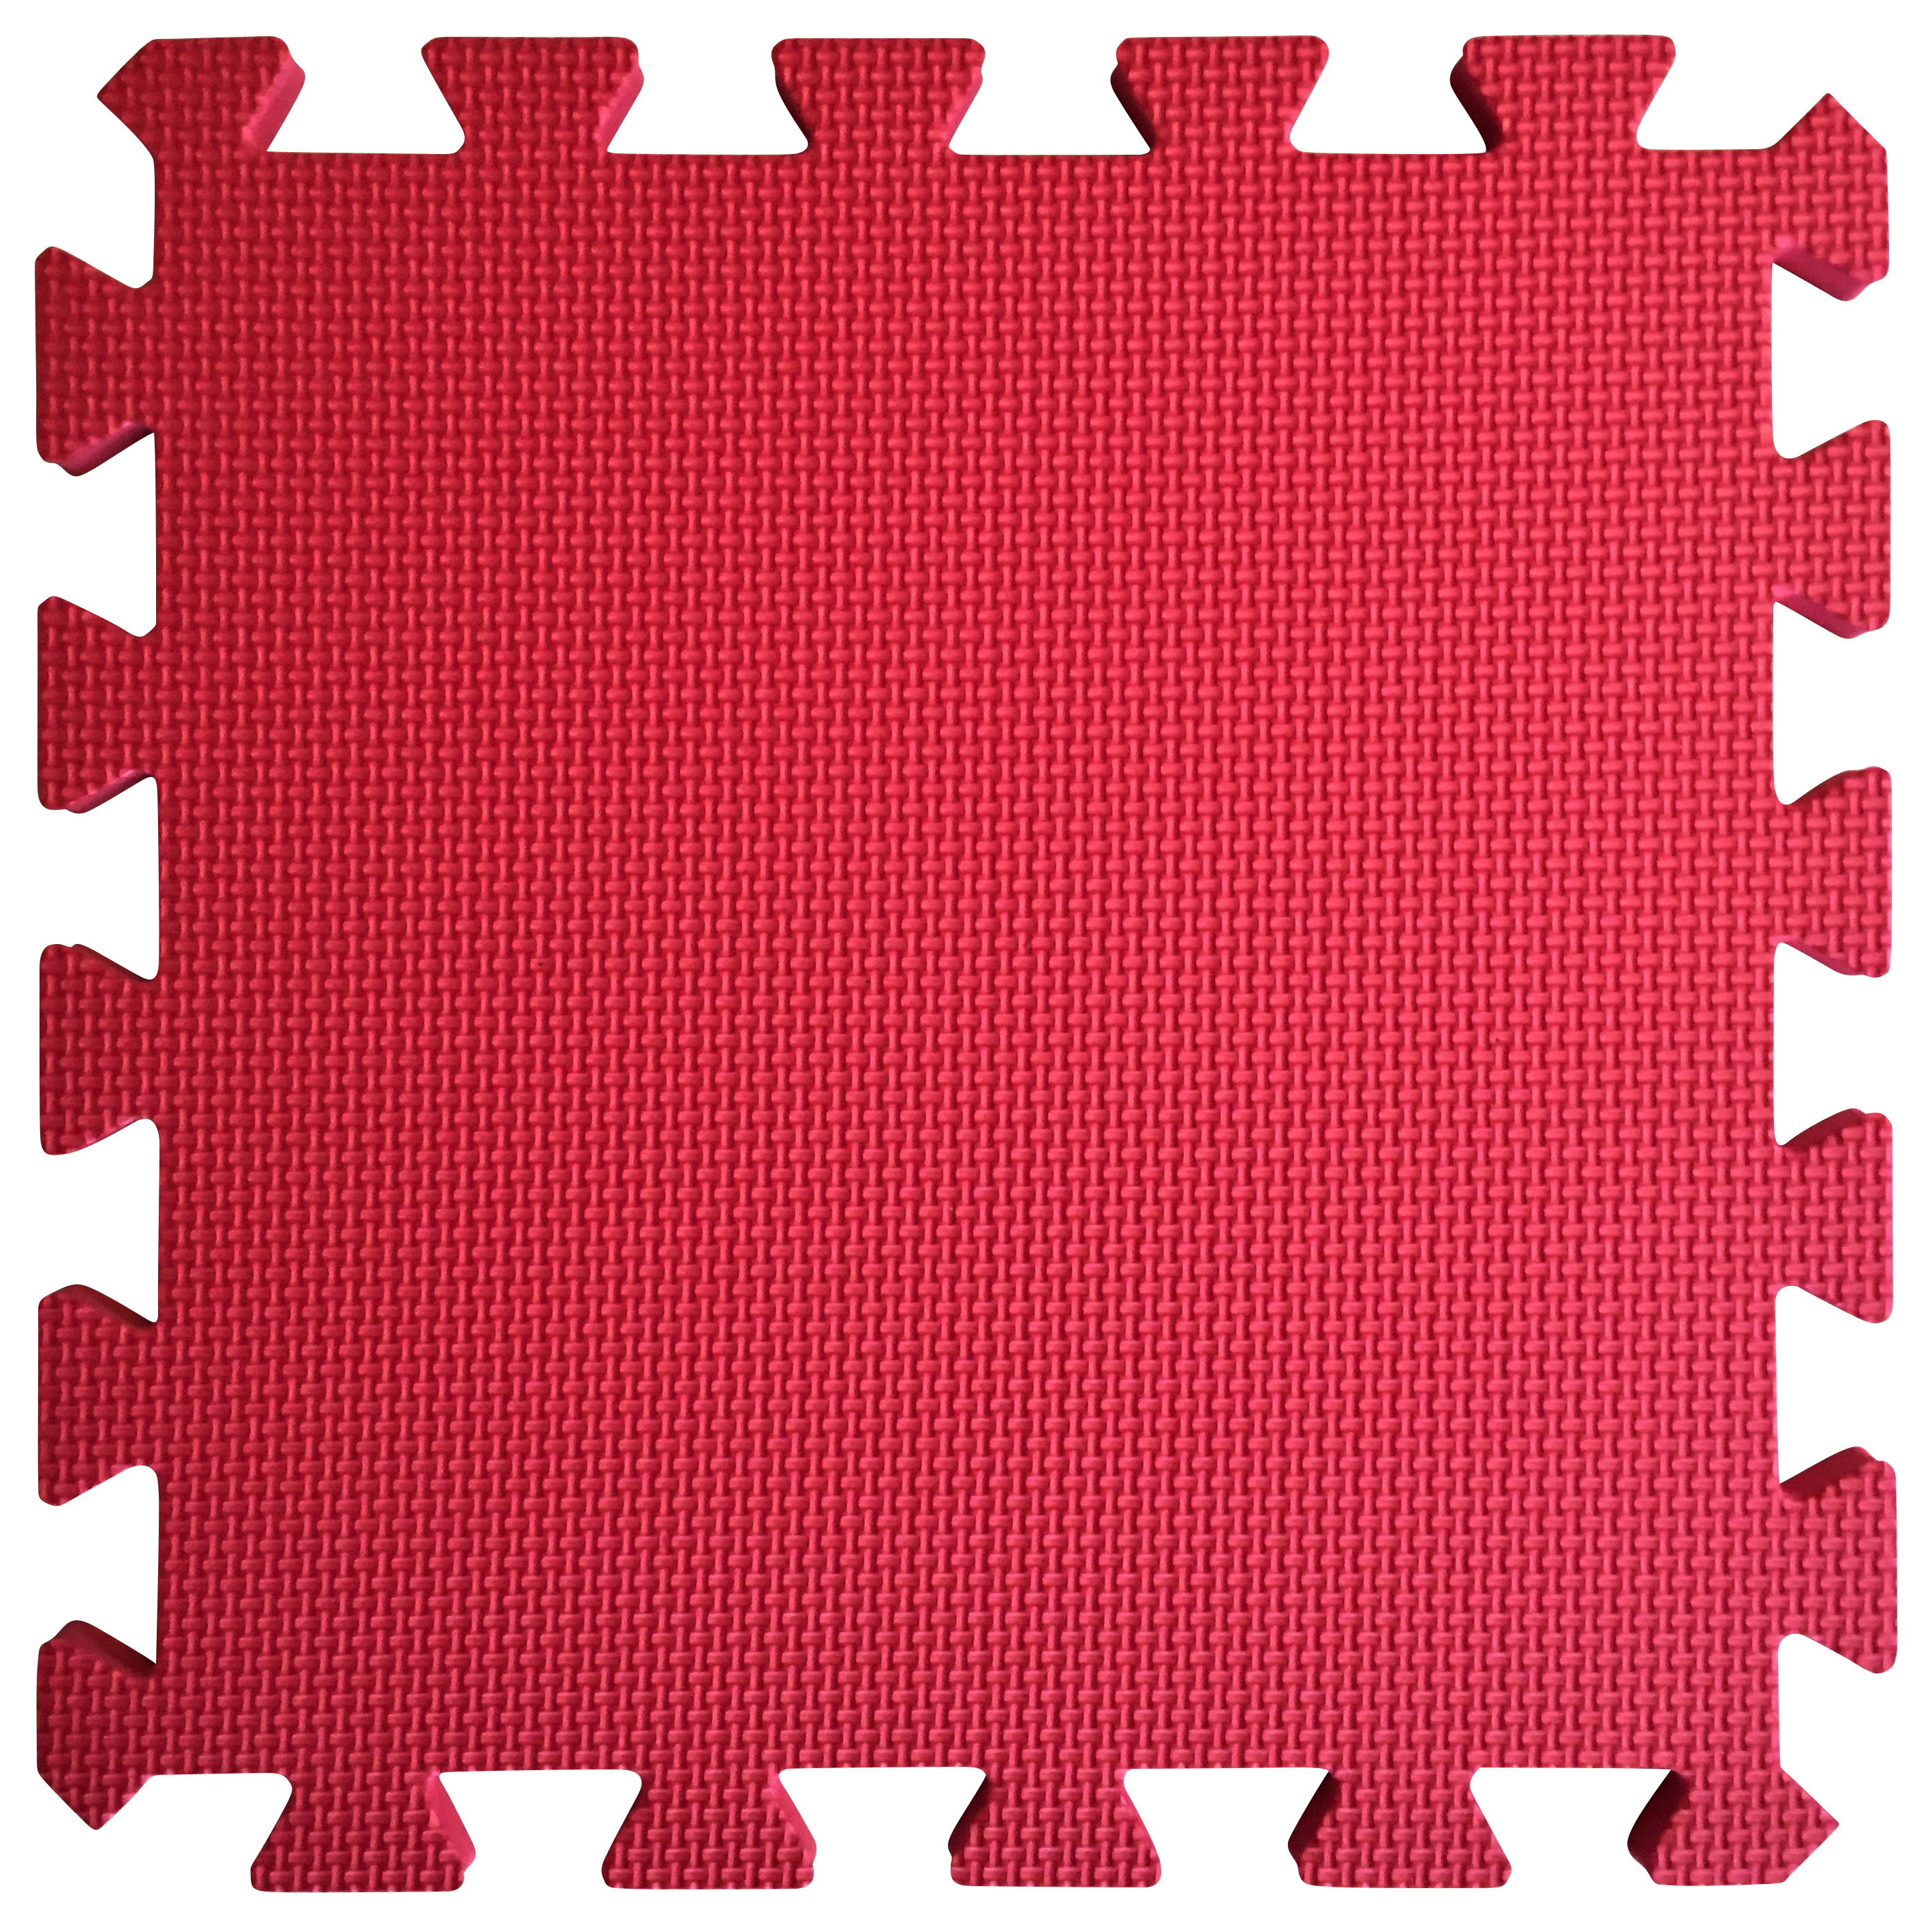 Warm Floor Red Interlocking Floor Tiles for Garden Buildings - 6 x 8ft